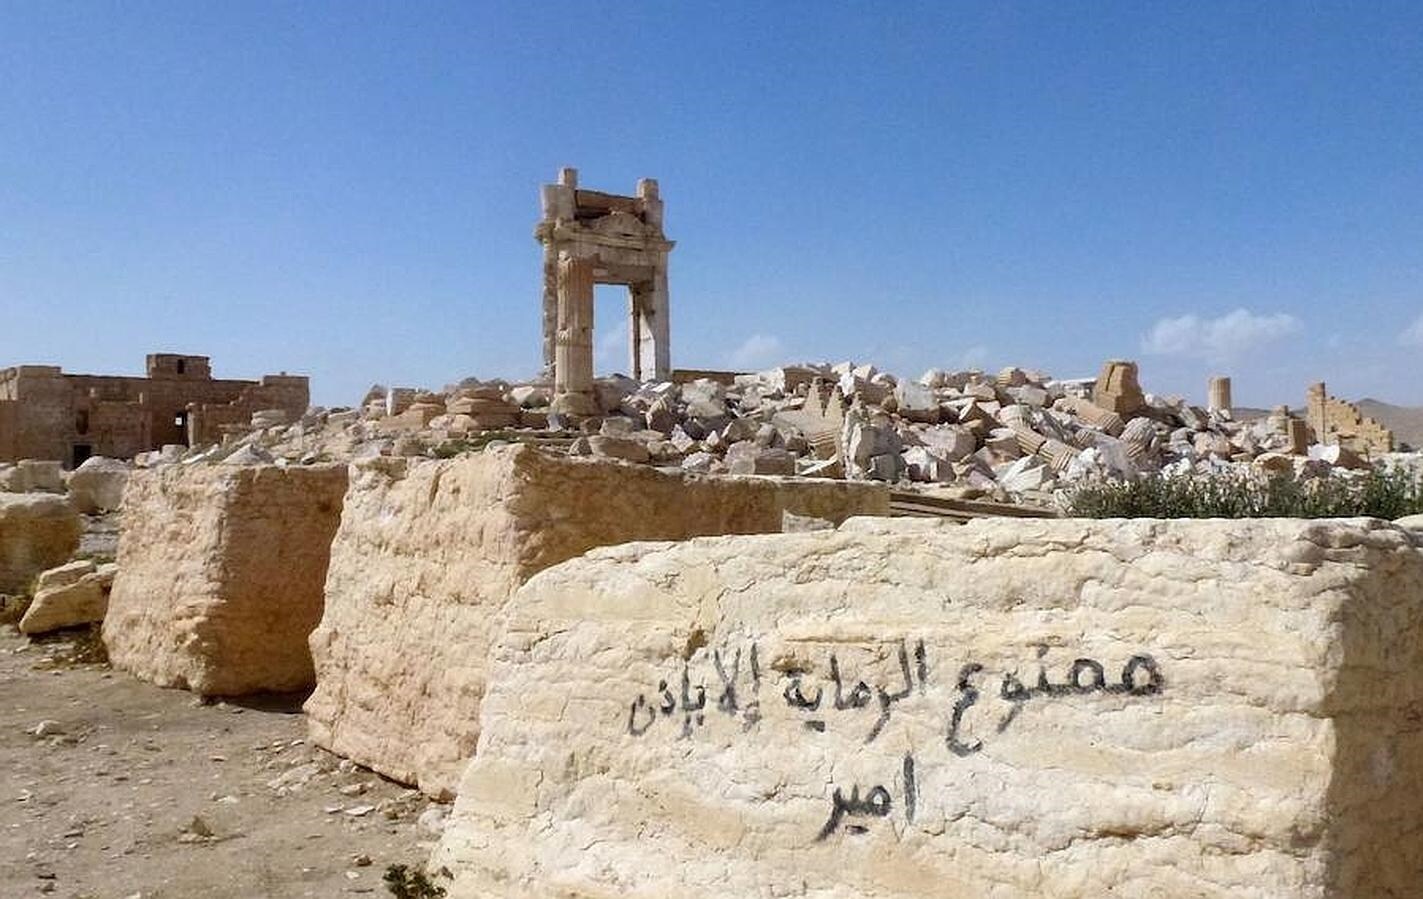 Lo que queda de la entrada al templo de Bel, destruido por los yihadistas. En la piedra, escrito en árabe: «Prohíbido disparar sin permiso del jefe». 